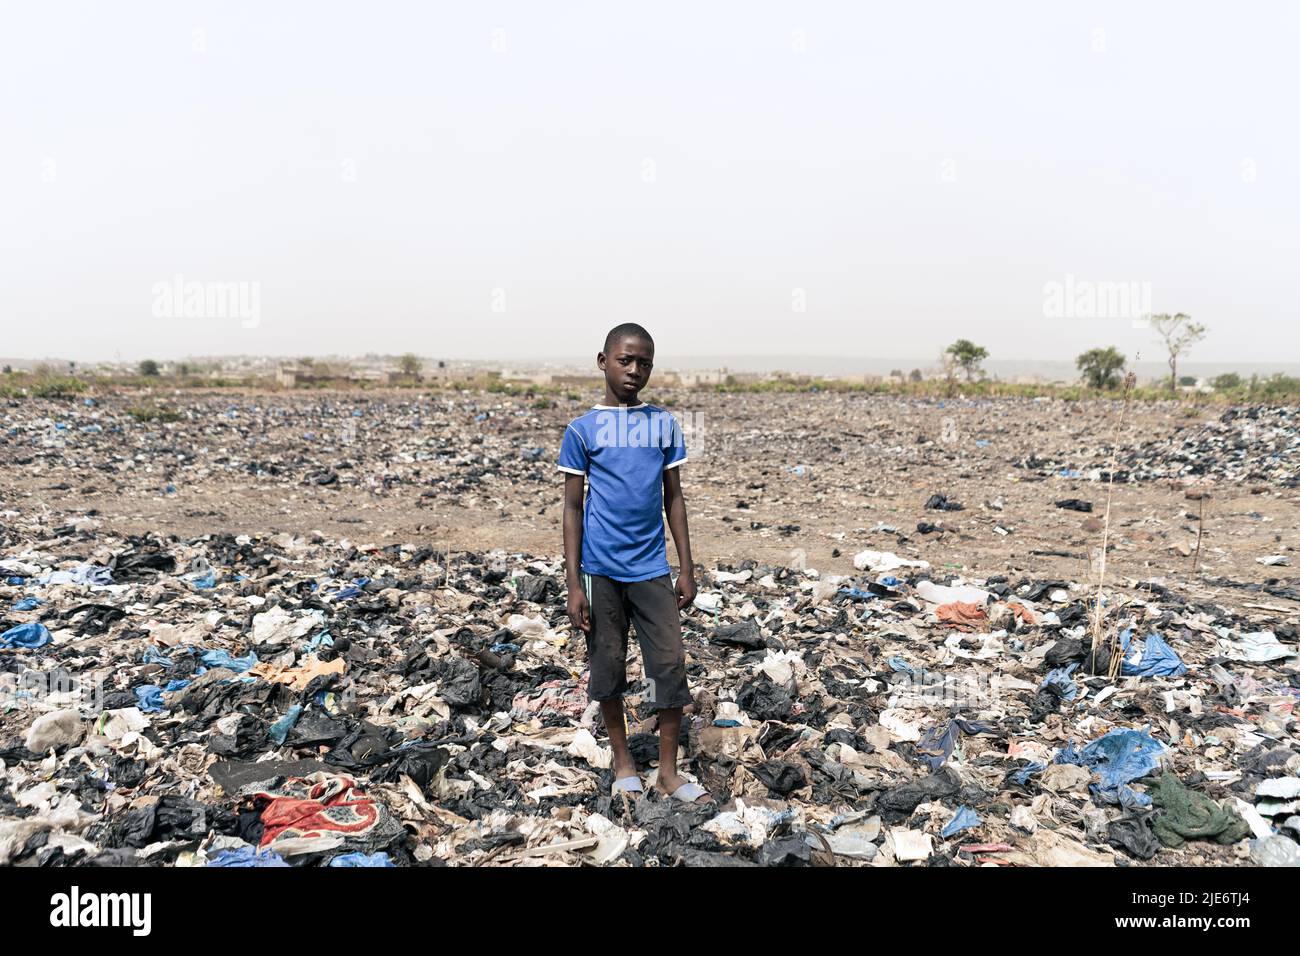 Kleiner afrikanischer Junge, der auf einem mit Müll bedeckten Feld steht; Misswirtschaft bei Abfällen in Entwicklungsländern Stockfoto